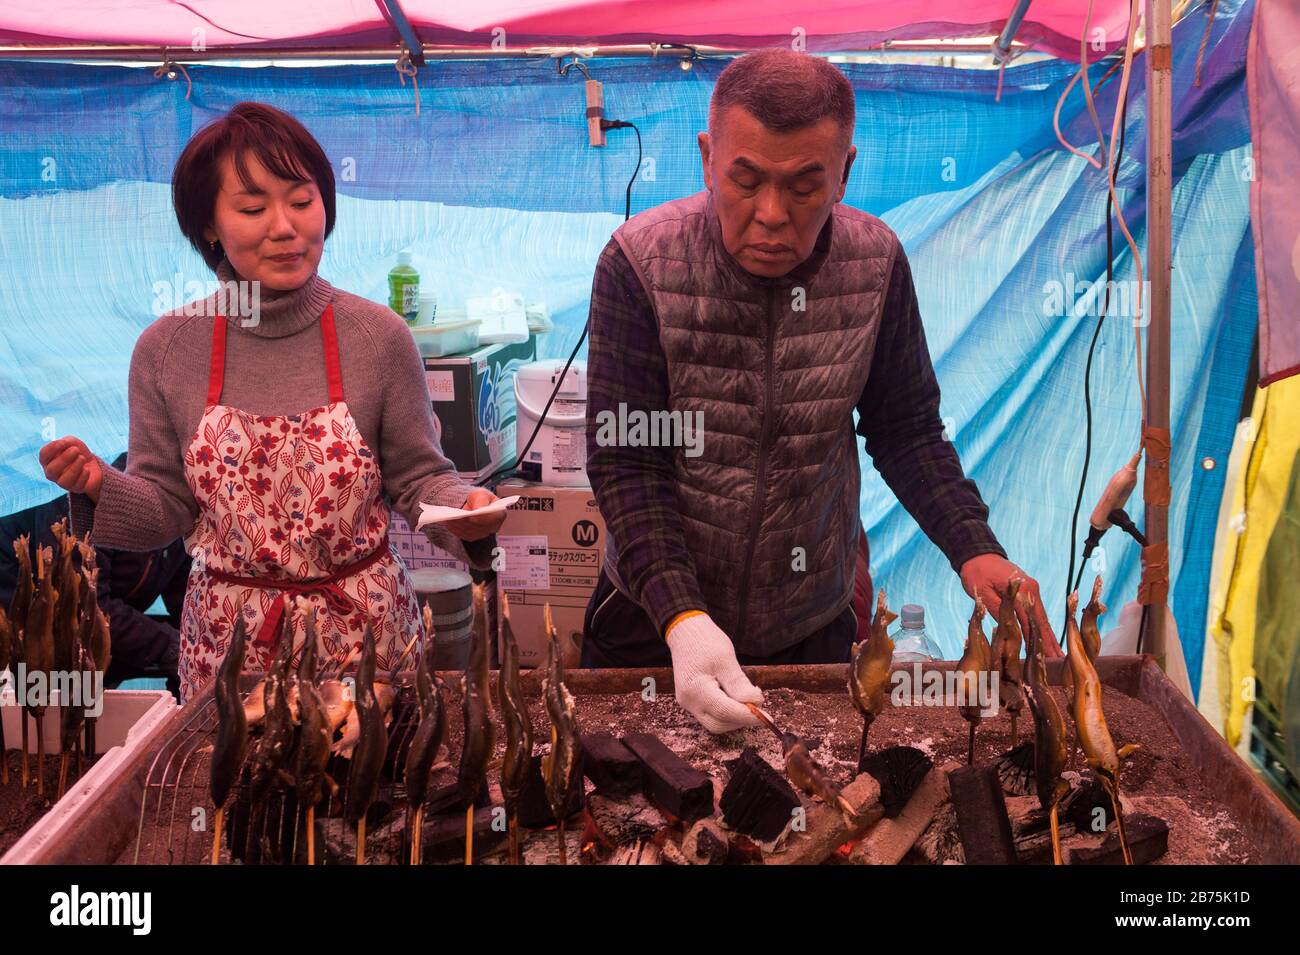 31.12.2017, Tokyo, Japon, Asie - un homme prépare des brochettes de poisson fraîchement rôties sur un stand de rue dans le quartier chibuya de Tokyo. [traduction automatique] Banque D'Images